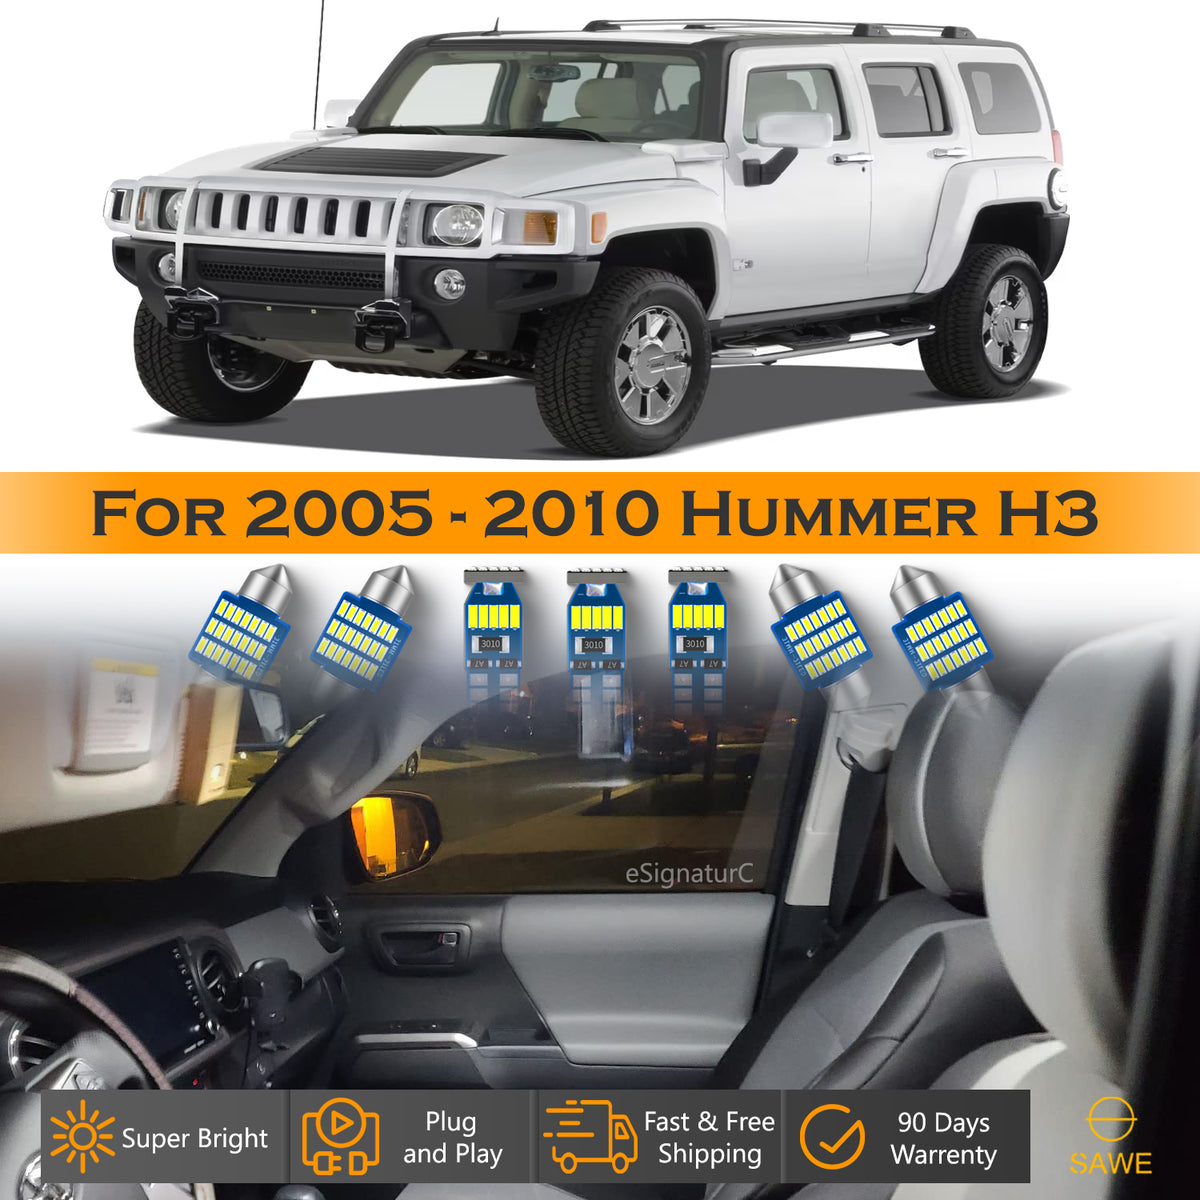 For Hummer H3 Interior LED Lights - Dome & Map Light Bulb Package Kit for 2005 - 2010 - White